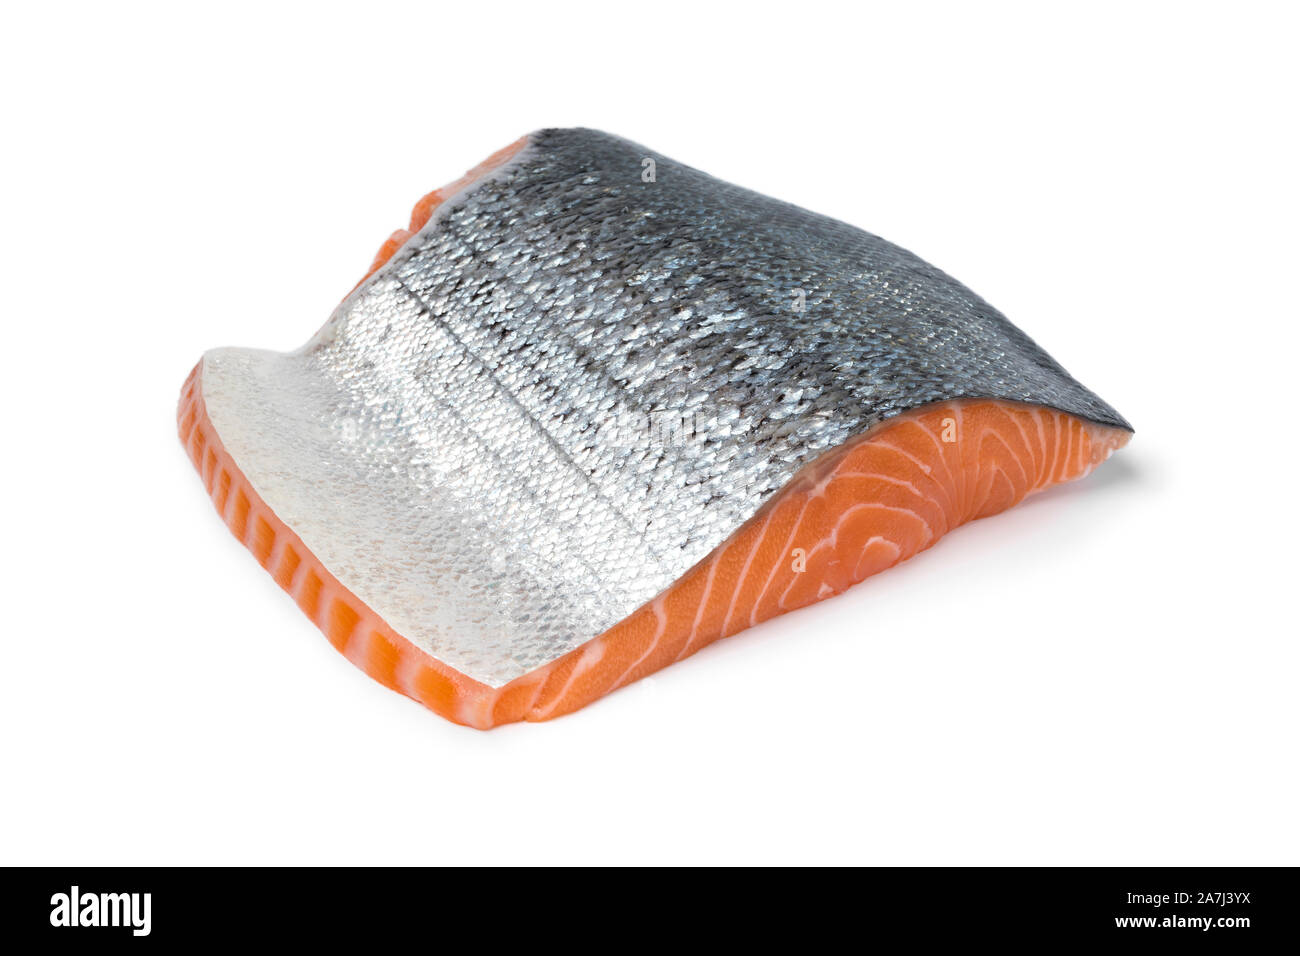 Pezzo di crudo fresco di filetto di salmone con la pelle argento isolato su sfondo bianco Foto Stock